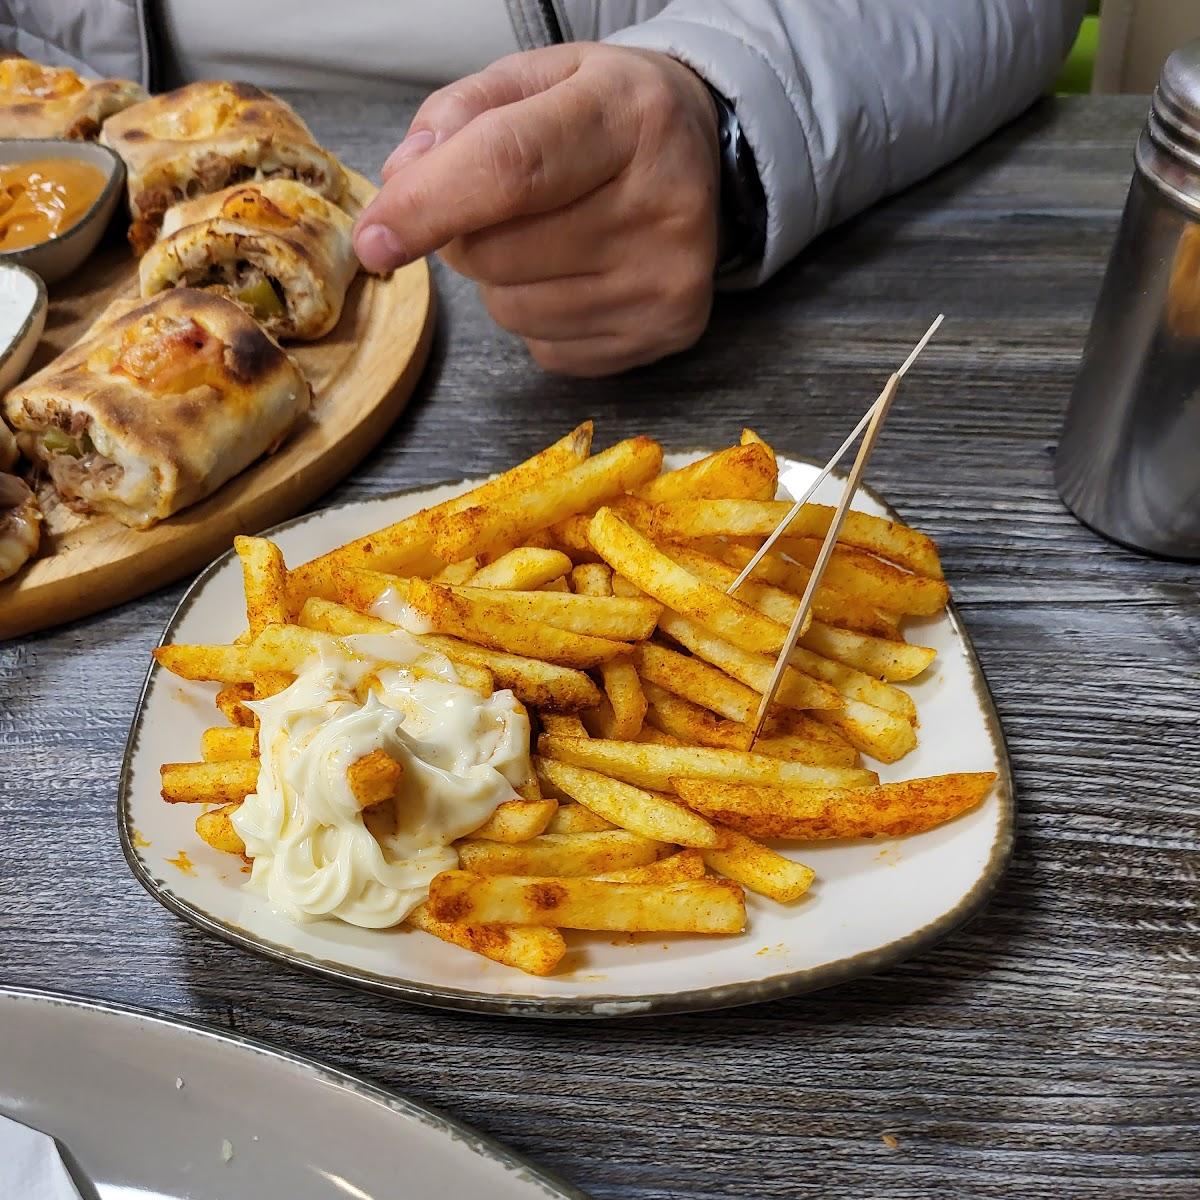 Restaurant "Döner macht schöner aber!!! LoLo Burger Kebap Haus macht glücklich!" in Brüggen